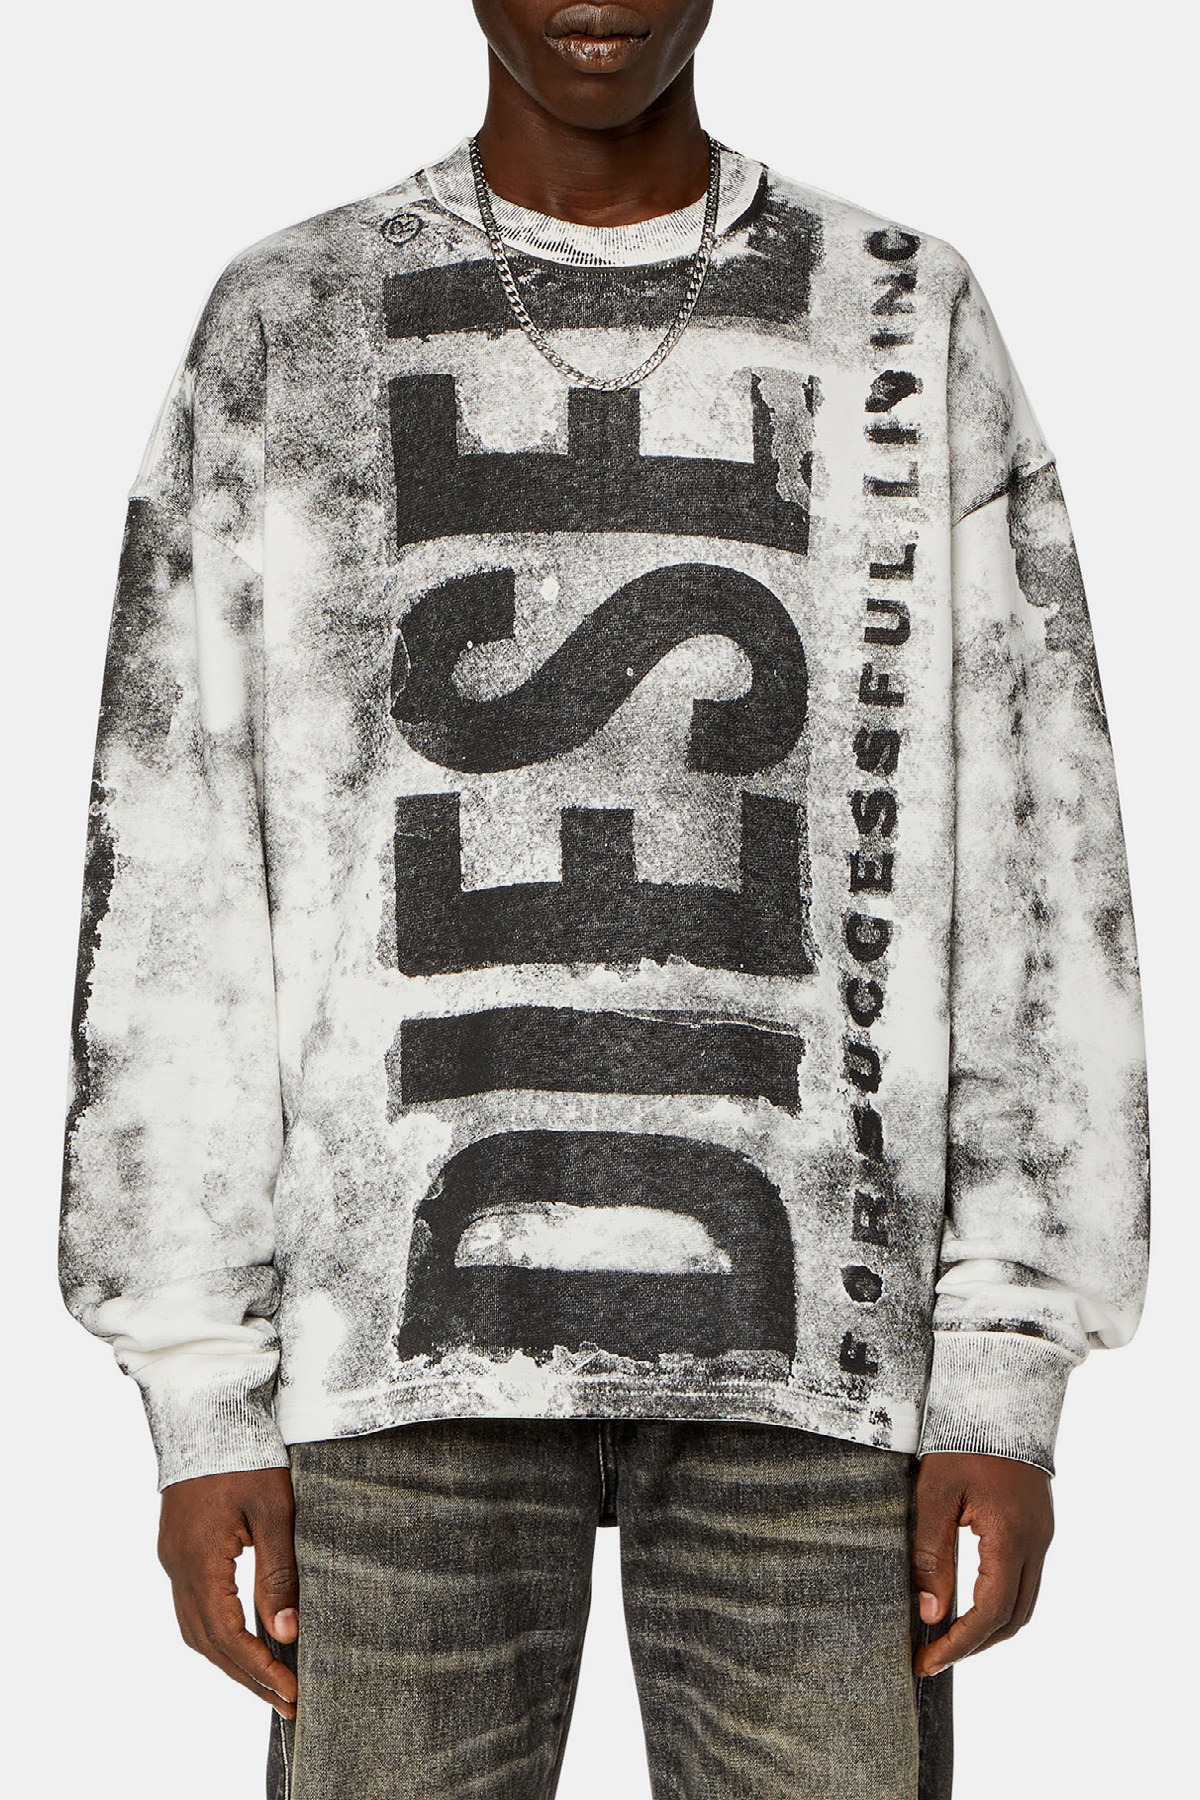 DIESEL S-Bunt-Bisc Sweater - Grey